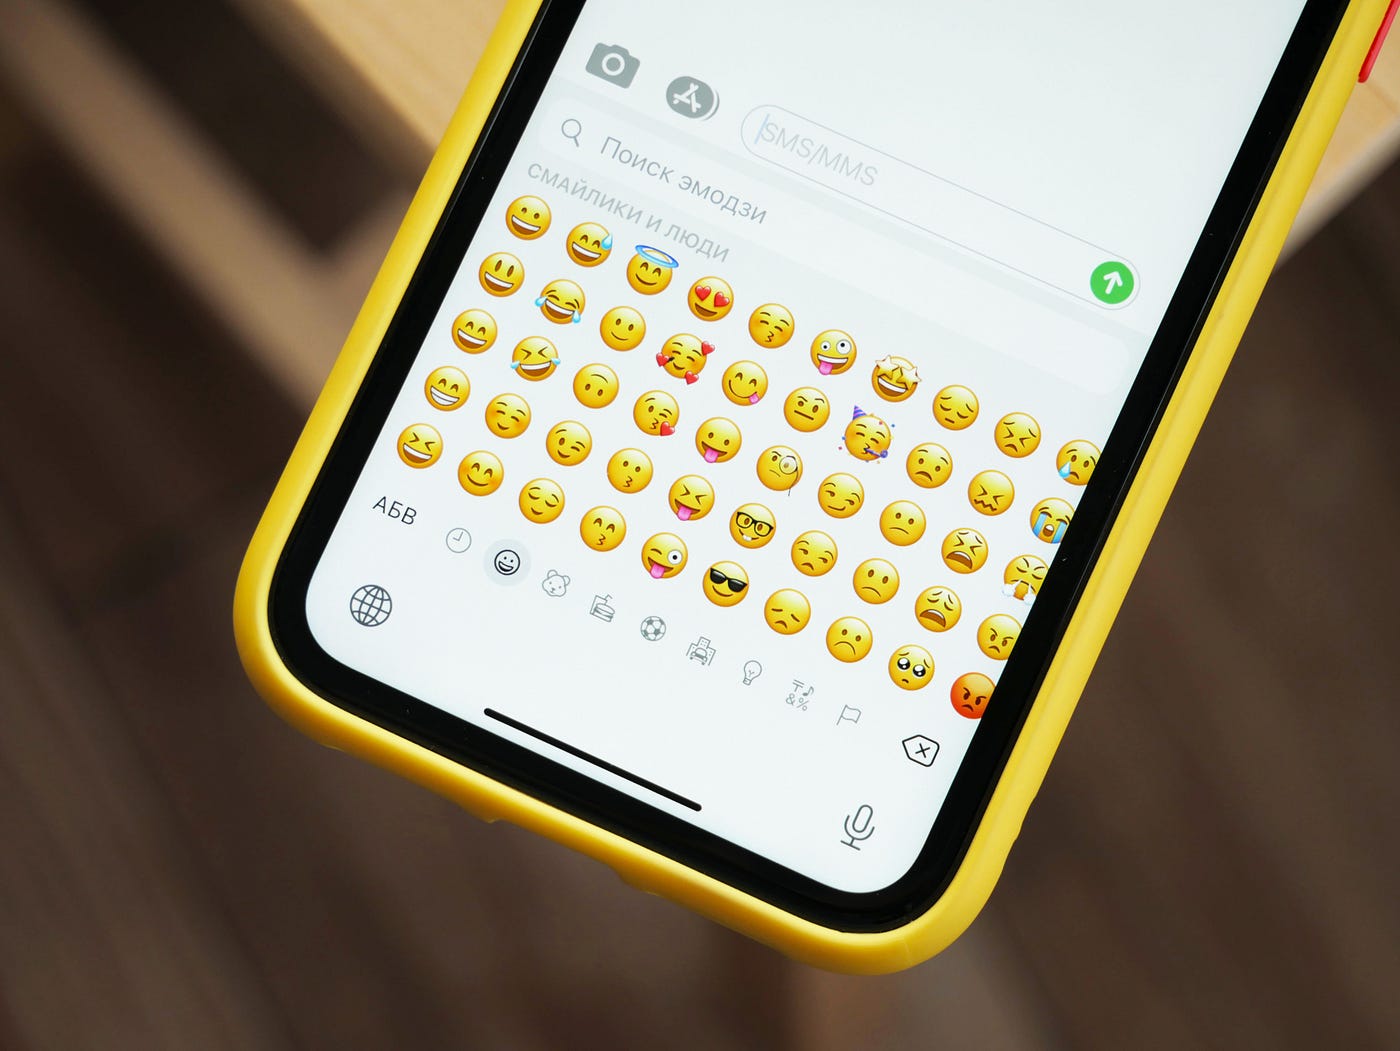 emoji call for help